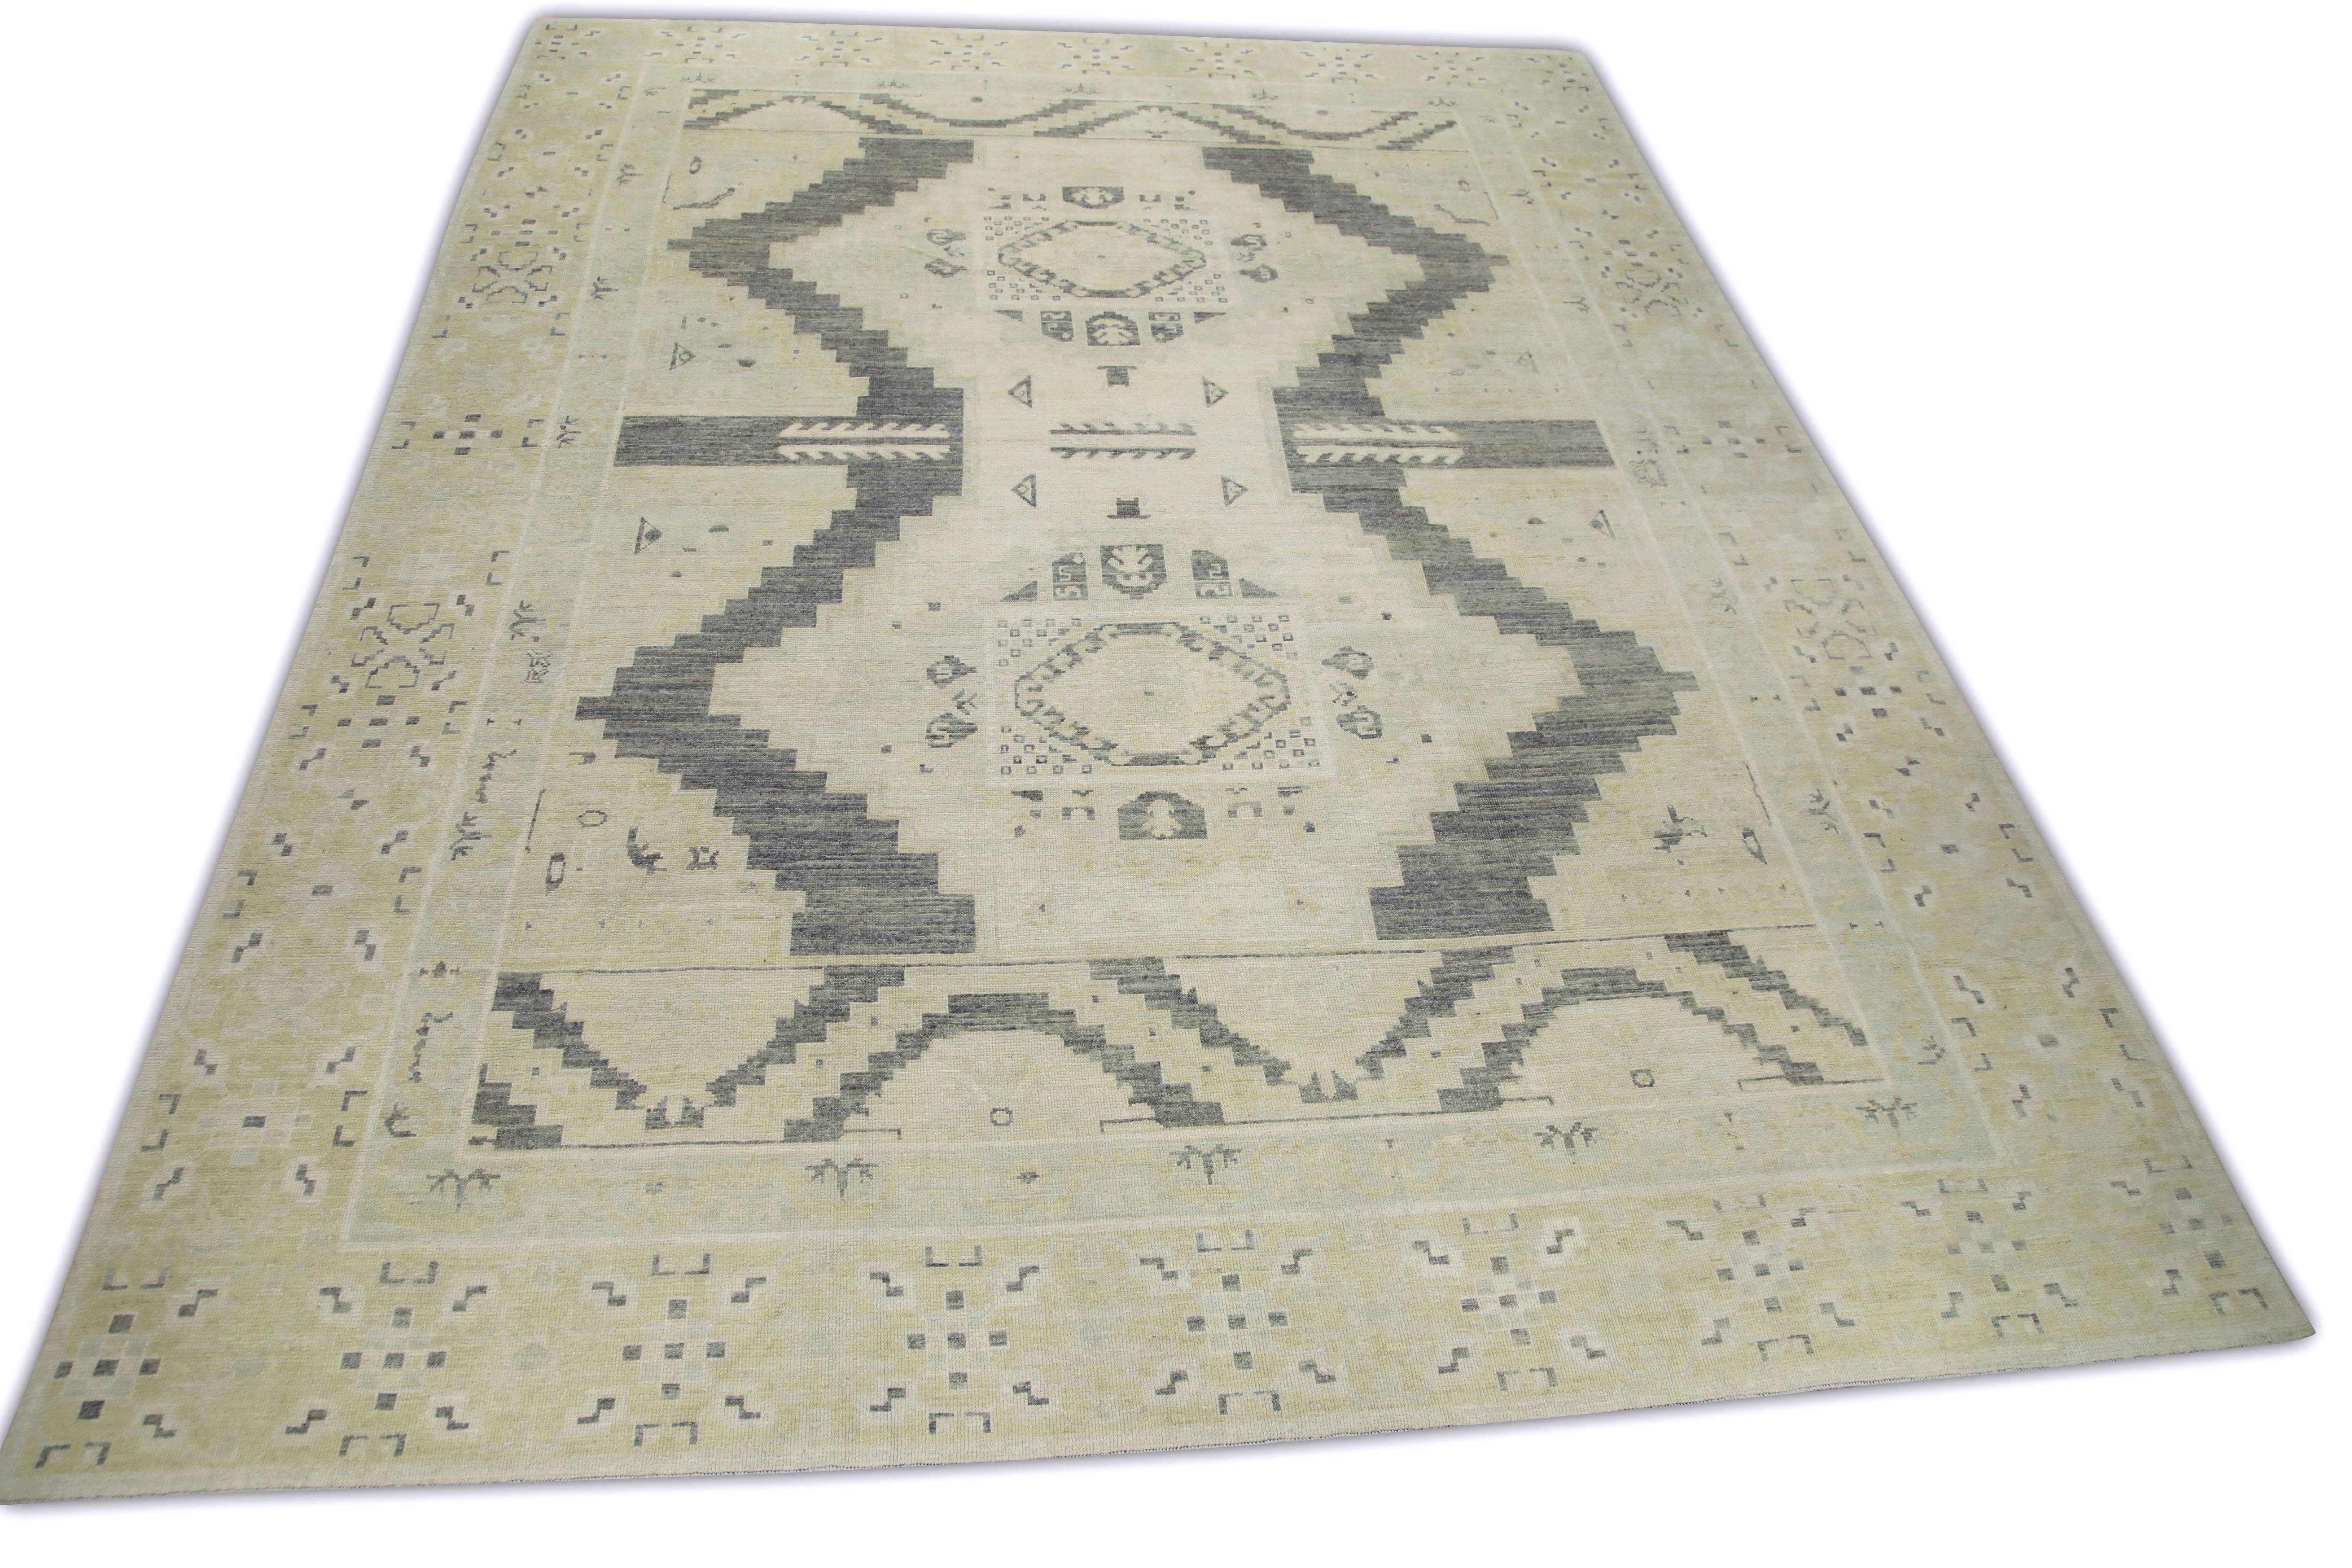 Dieser moderne, fein gewebte türkische Oushak-Teppich ist ein atemberaubendes Kunstwerk, das von erfahrenen Kunsthandwerkern mit traditionellen Techniken handgeknüpft wurde. Der Teppich weist komplizierte Muster und eine weiche Farbpalette auf, die